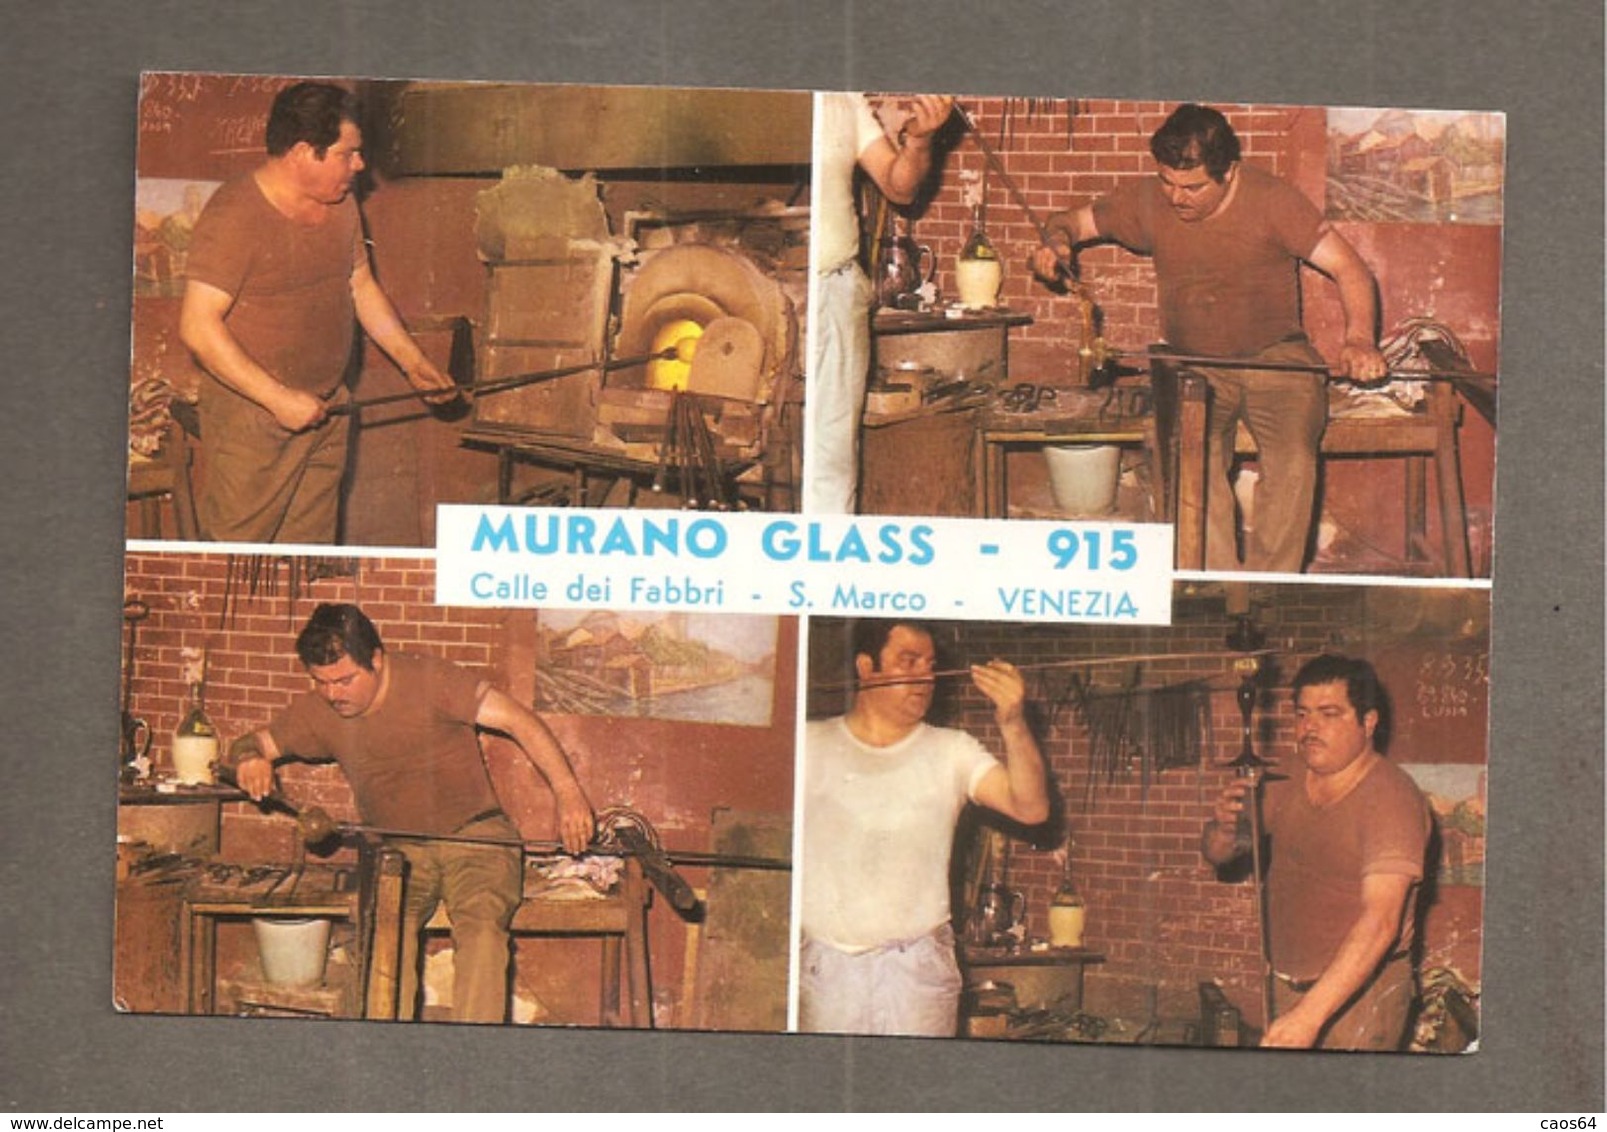 MURANO GLASS - 915 S. MARCO VENEZIA CARTOLINA LAVORAZIONE VETRO - Shops